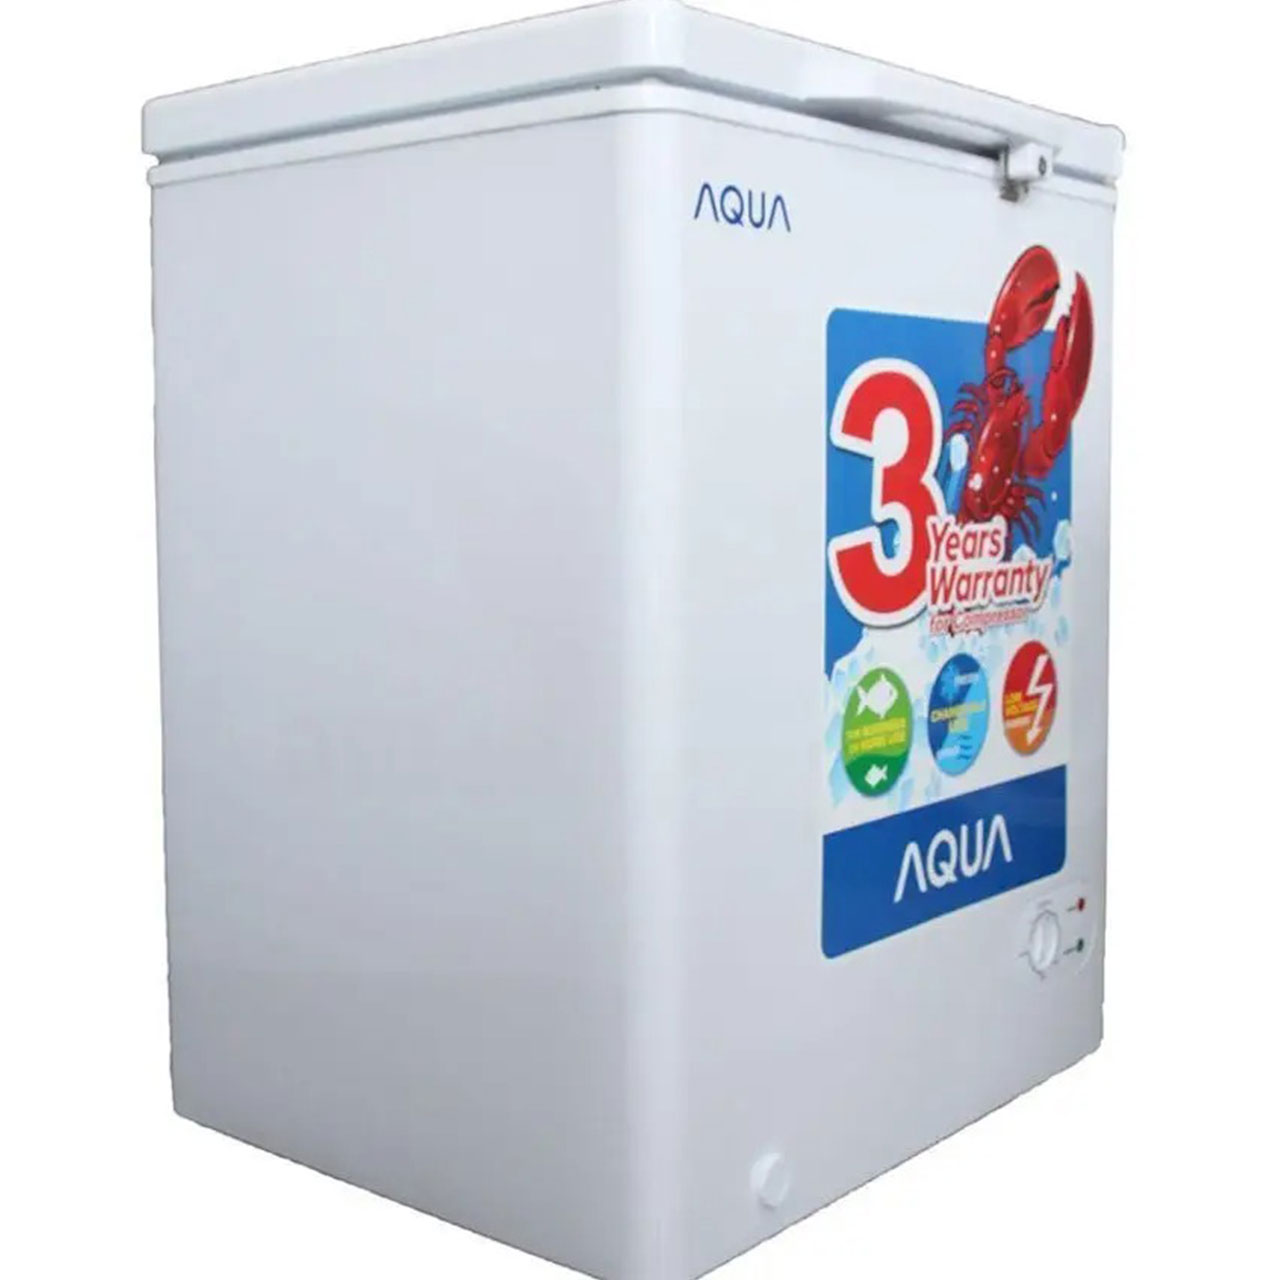 Tủ Đông Aqua AQF-C210 Dung Tích 111 Lít giá rẻ nhất | Dienmaythienphu